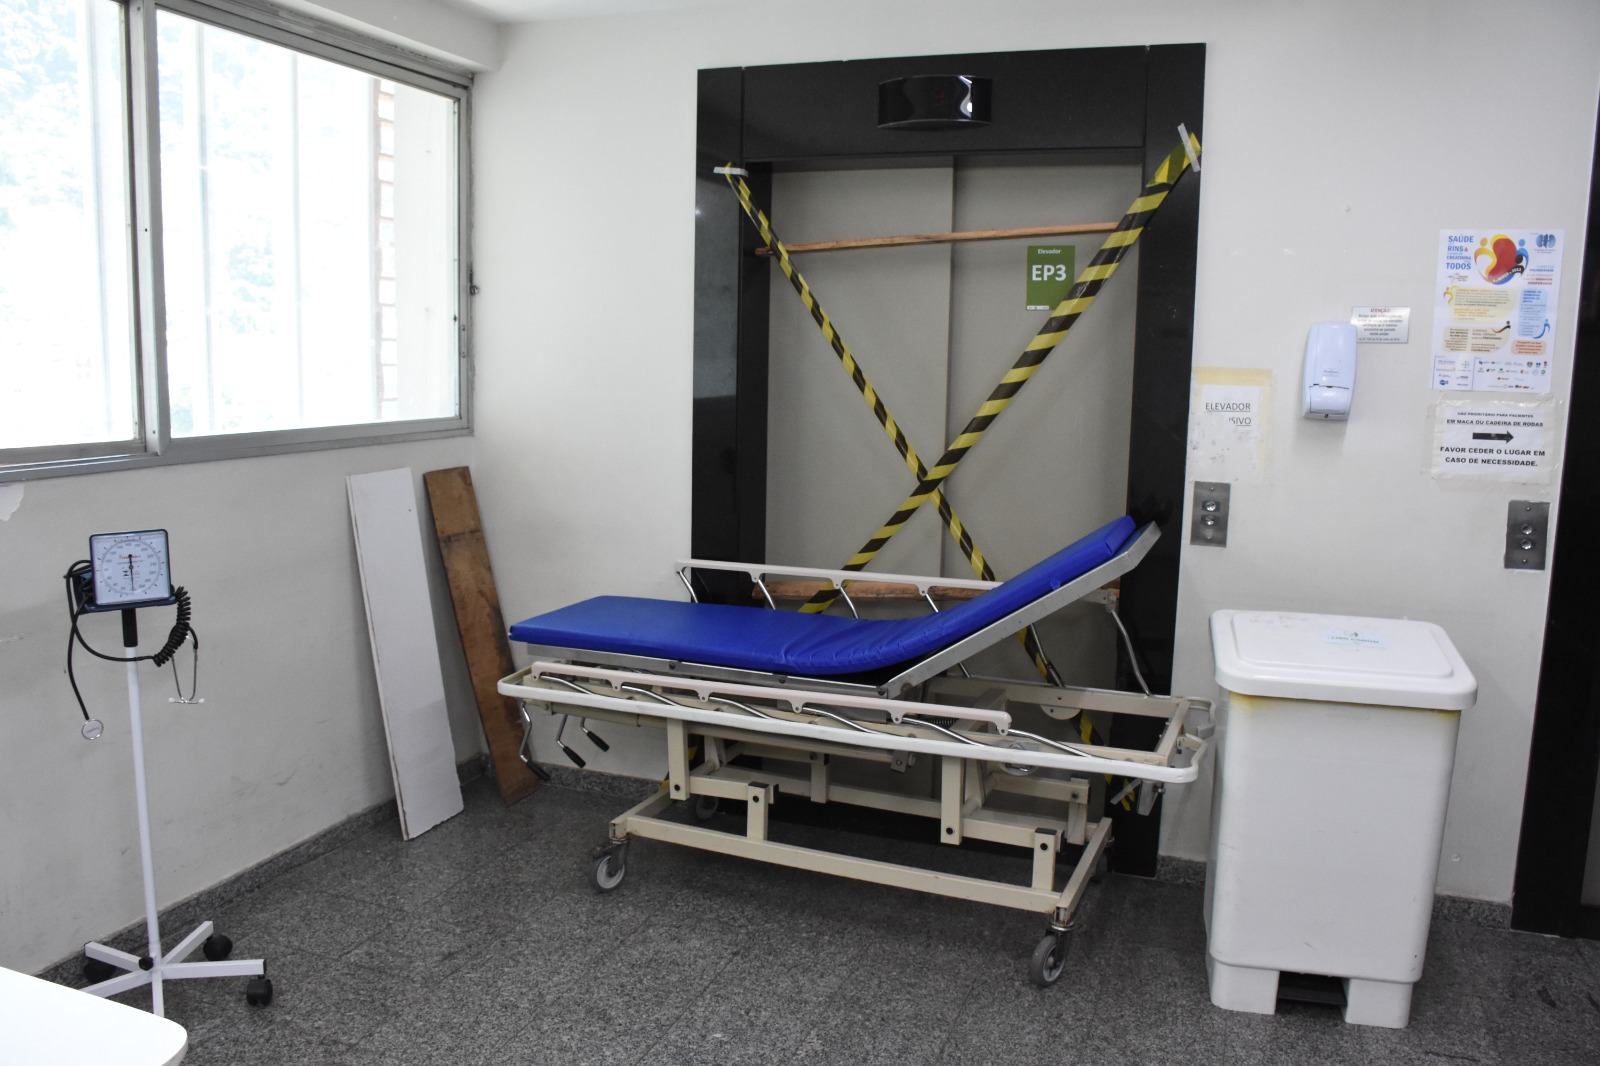 Leito de enfermaria fechado, sem acesso de elevador na ala EP3 no Hospital Federal da Lagoa — Foto: Reprodução relatório 